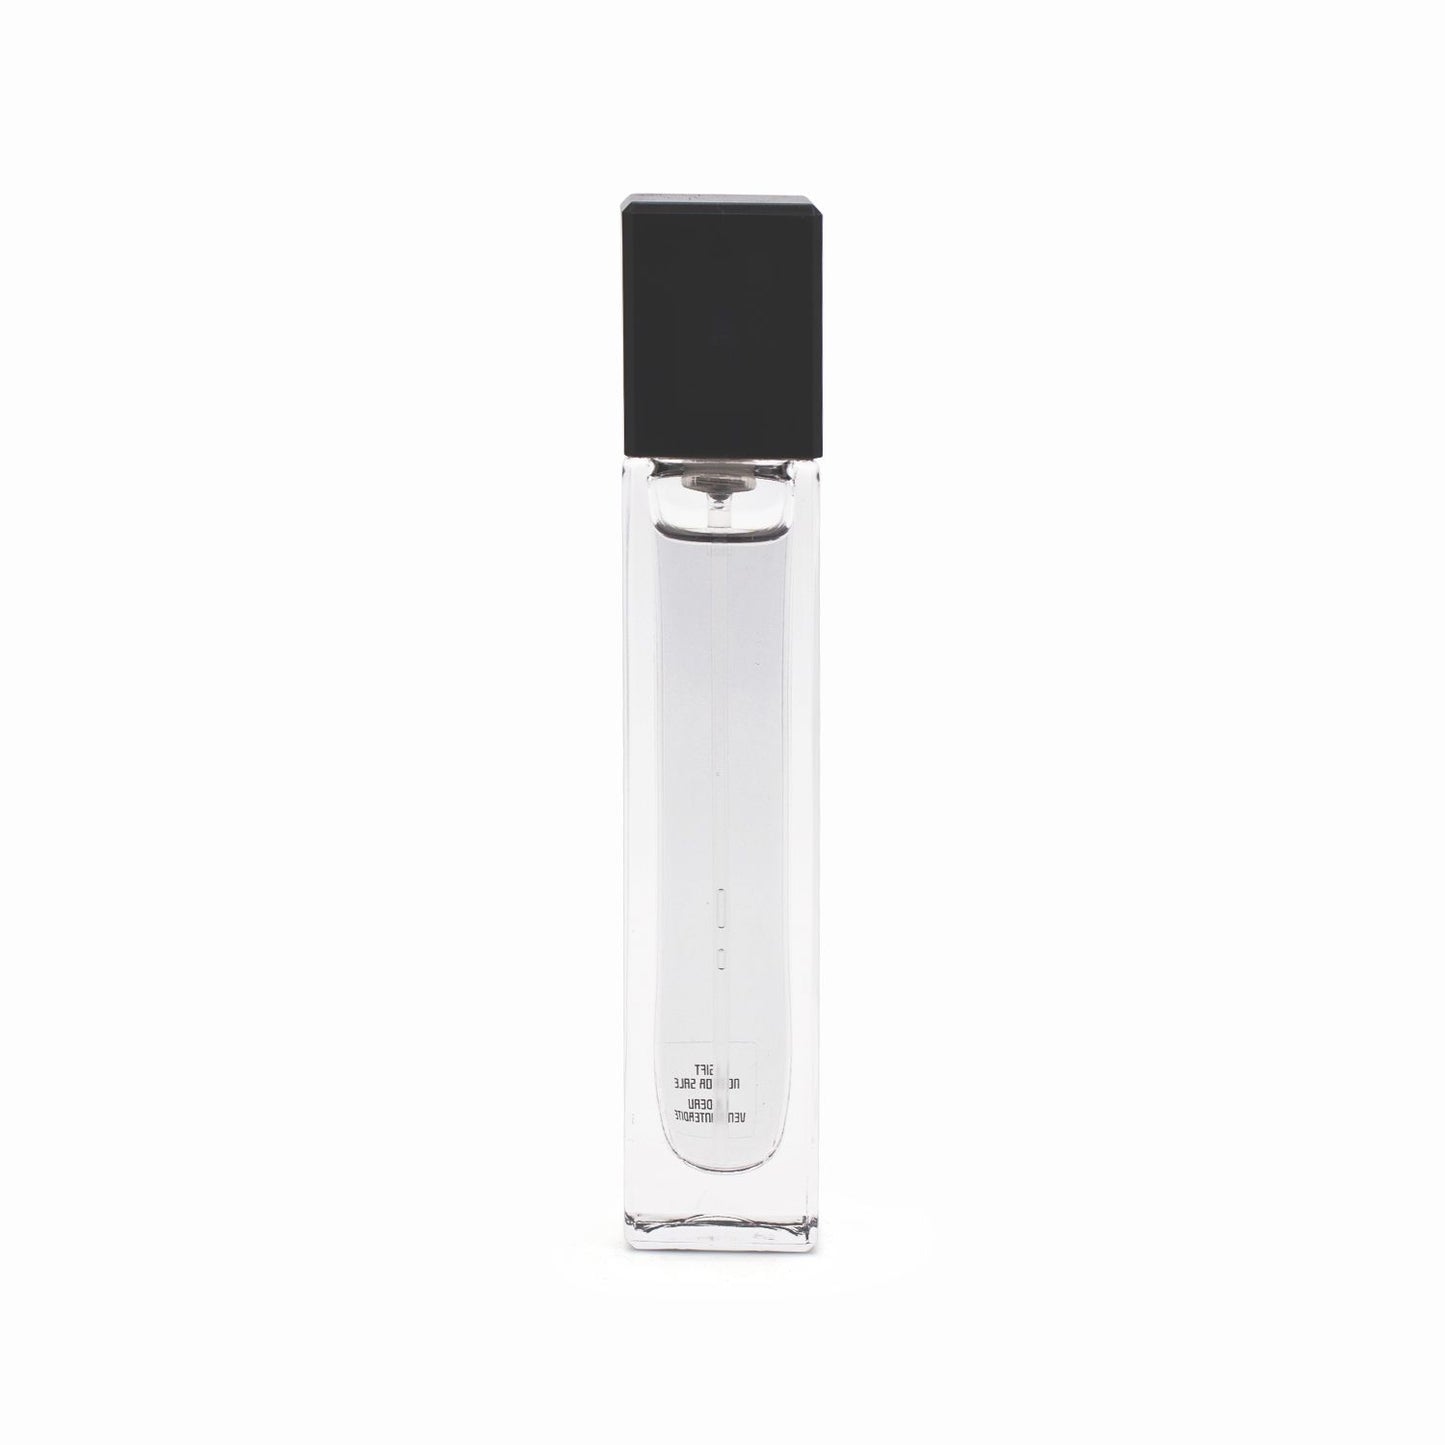 Serge Lutens Collection Poivre Noir Eau De Parfum 10ml - Imperfect Box